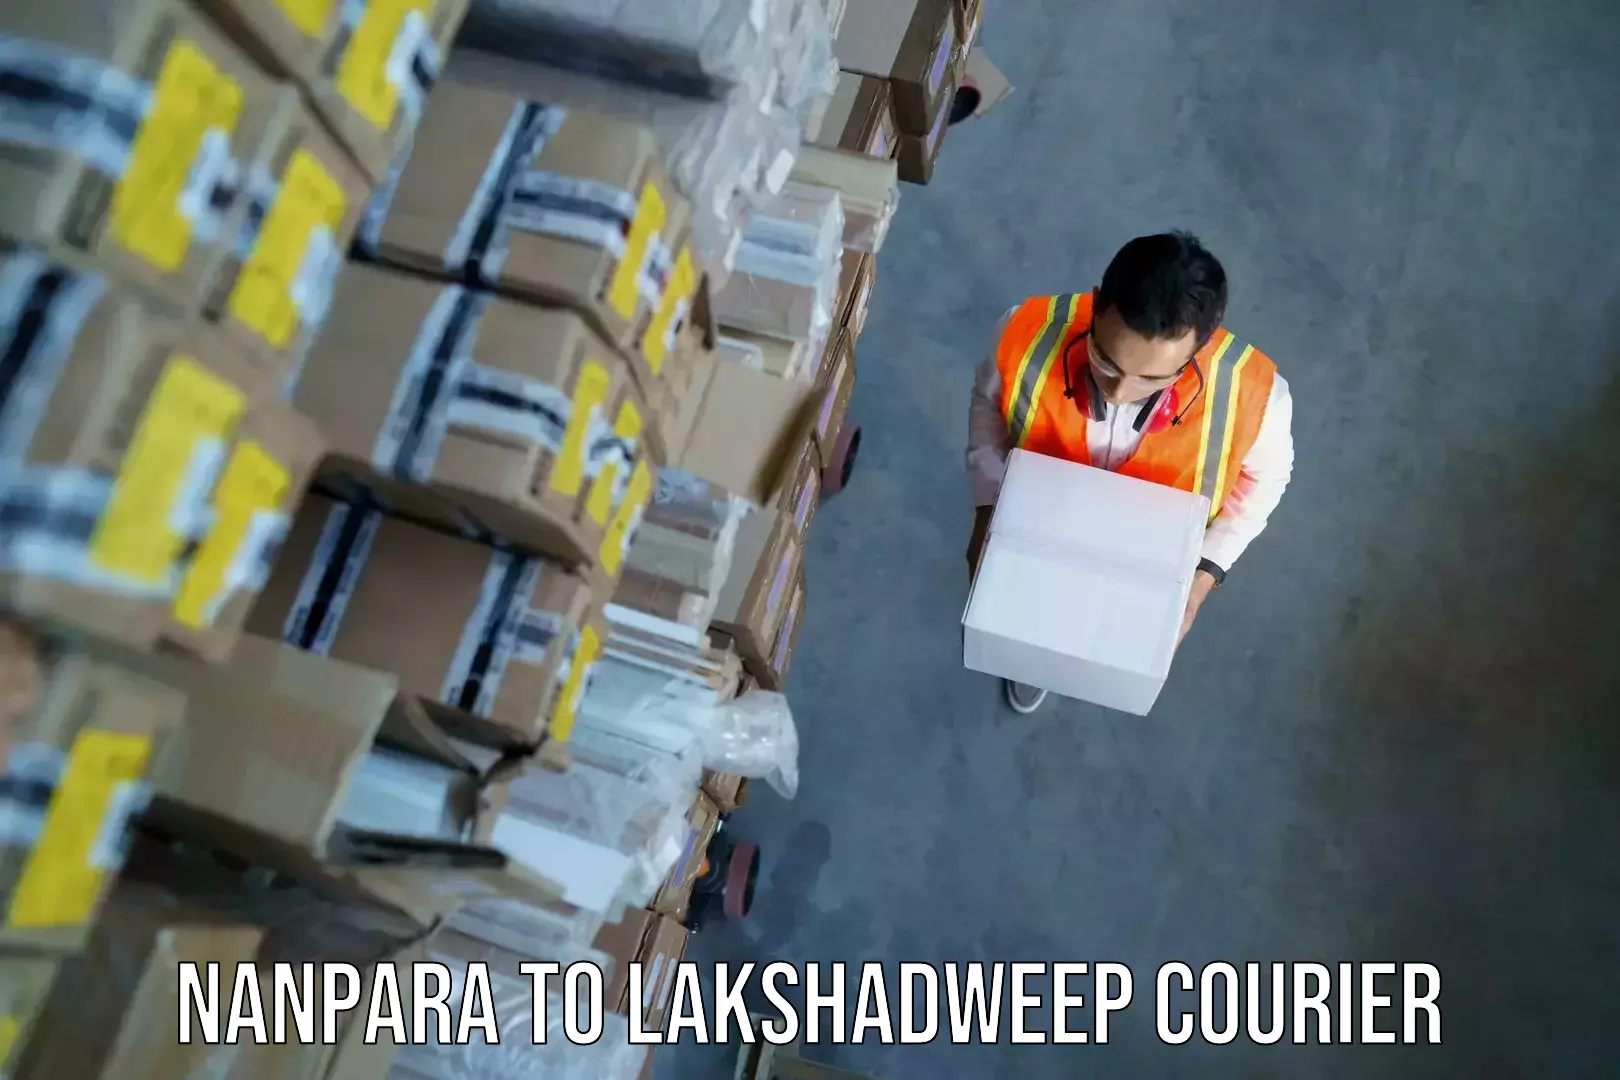 Baggage shipping experience Nanpara to Lakshadweep